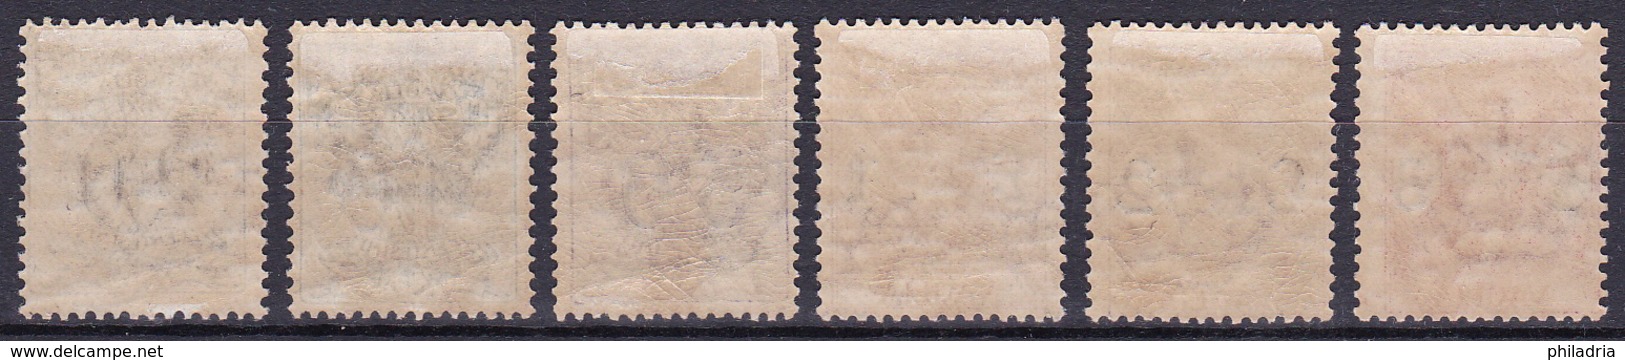 Italia, 1924, Postage Due, Segnatasse Vaglia, Complete Set, Mint, Hinged, Good Quality - Tax On Money Orders